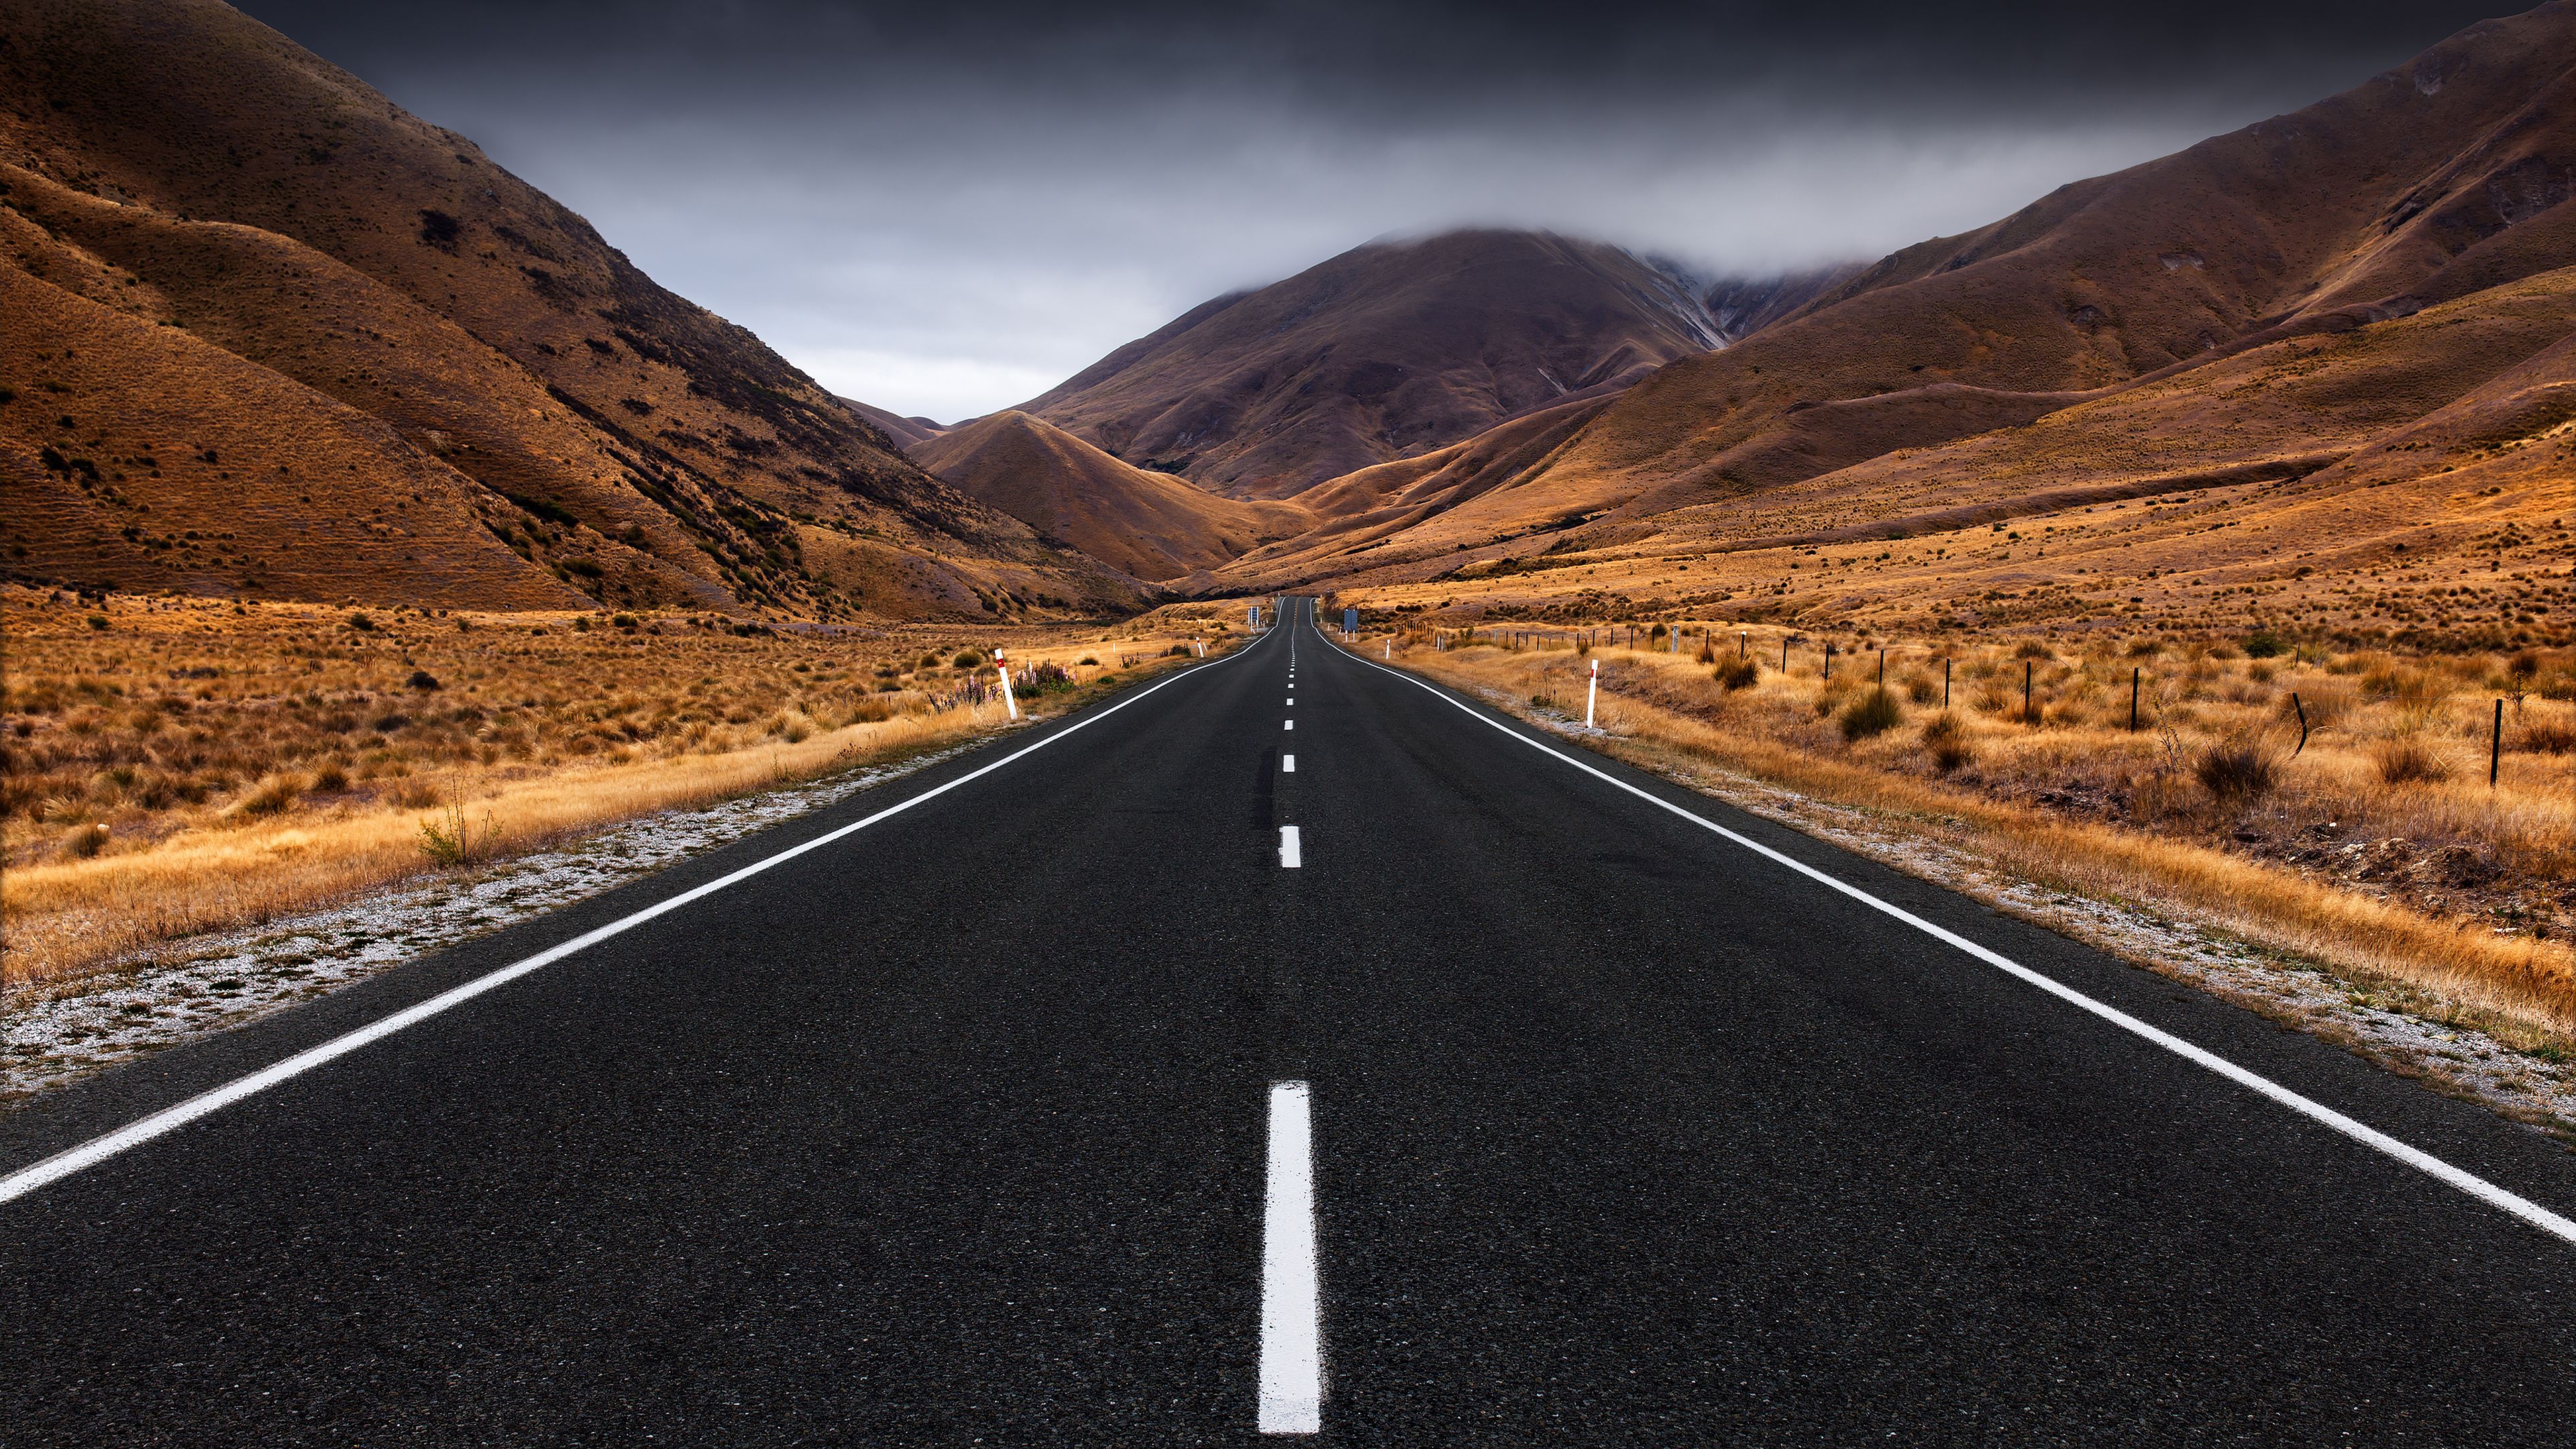 Lindis Pass, New Zealand, Landscape, Empty Road, Landscape, Misty, 4k Free deskk wallpaper, Ultra HD